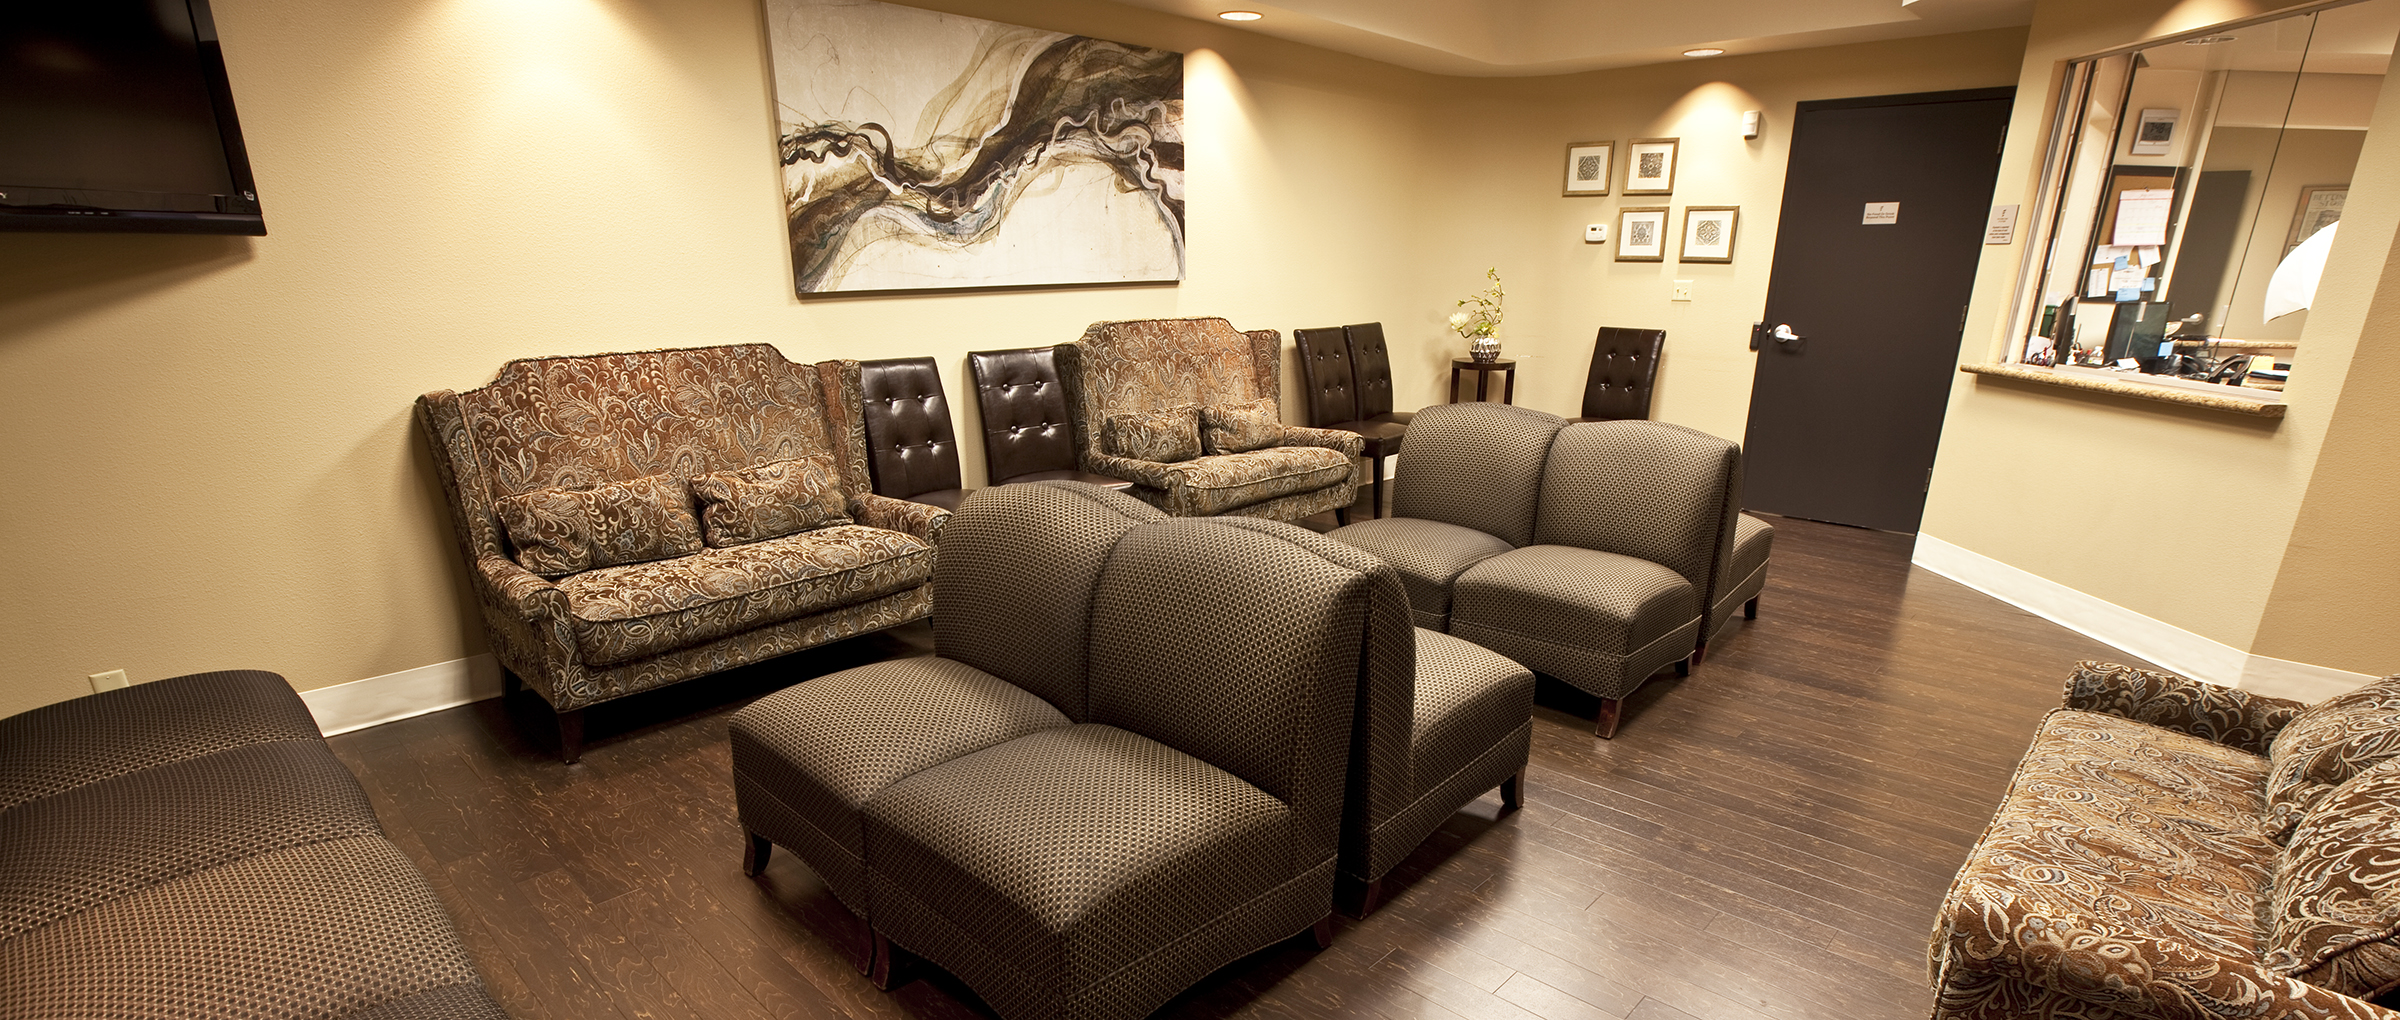 The Fertility Center of Las Vegas: recepción y sala de espera